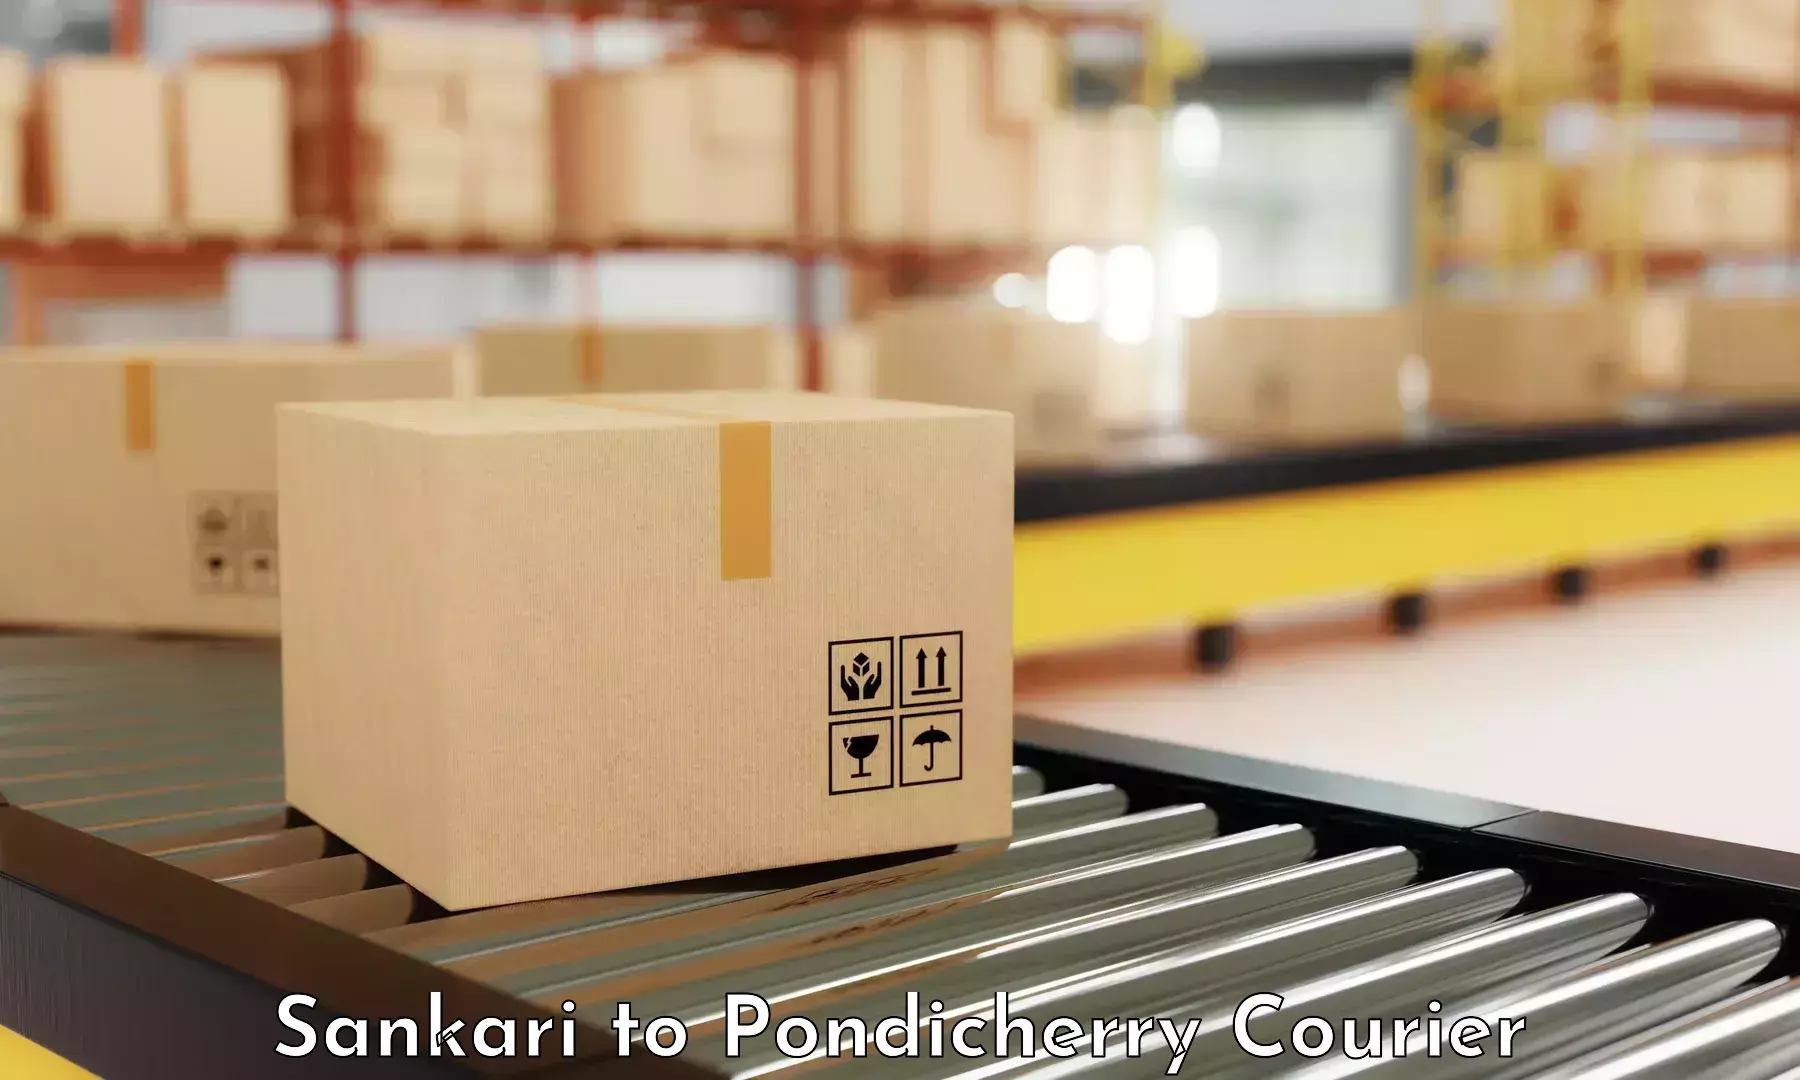 24-hour courier service in Sankari to Pondicherry